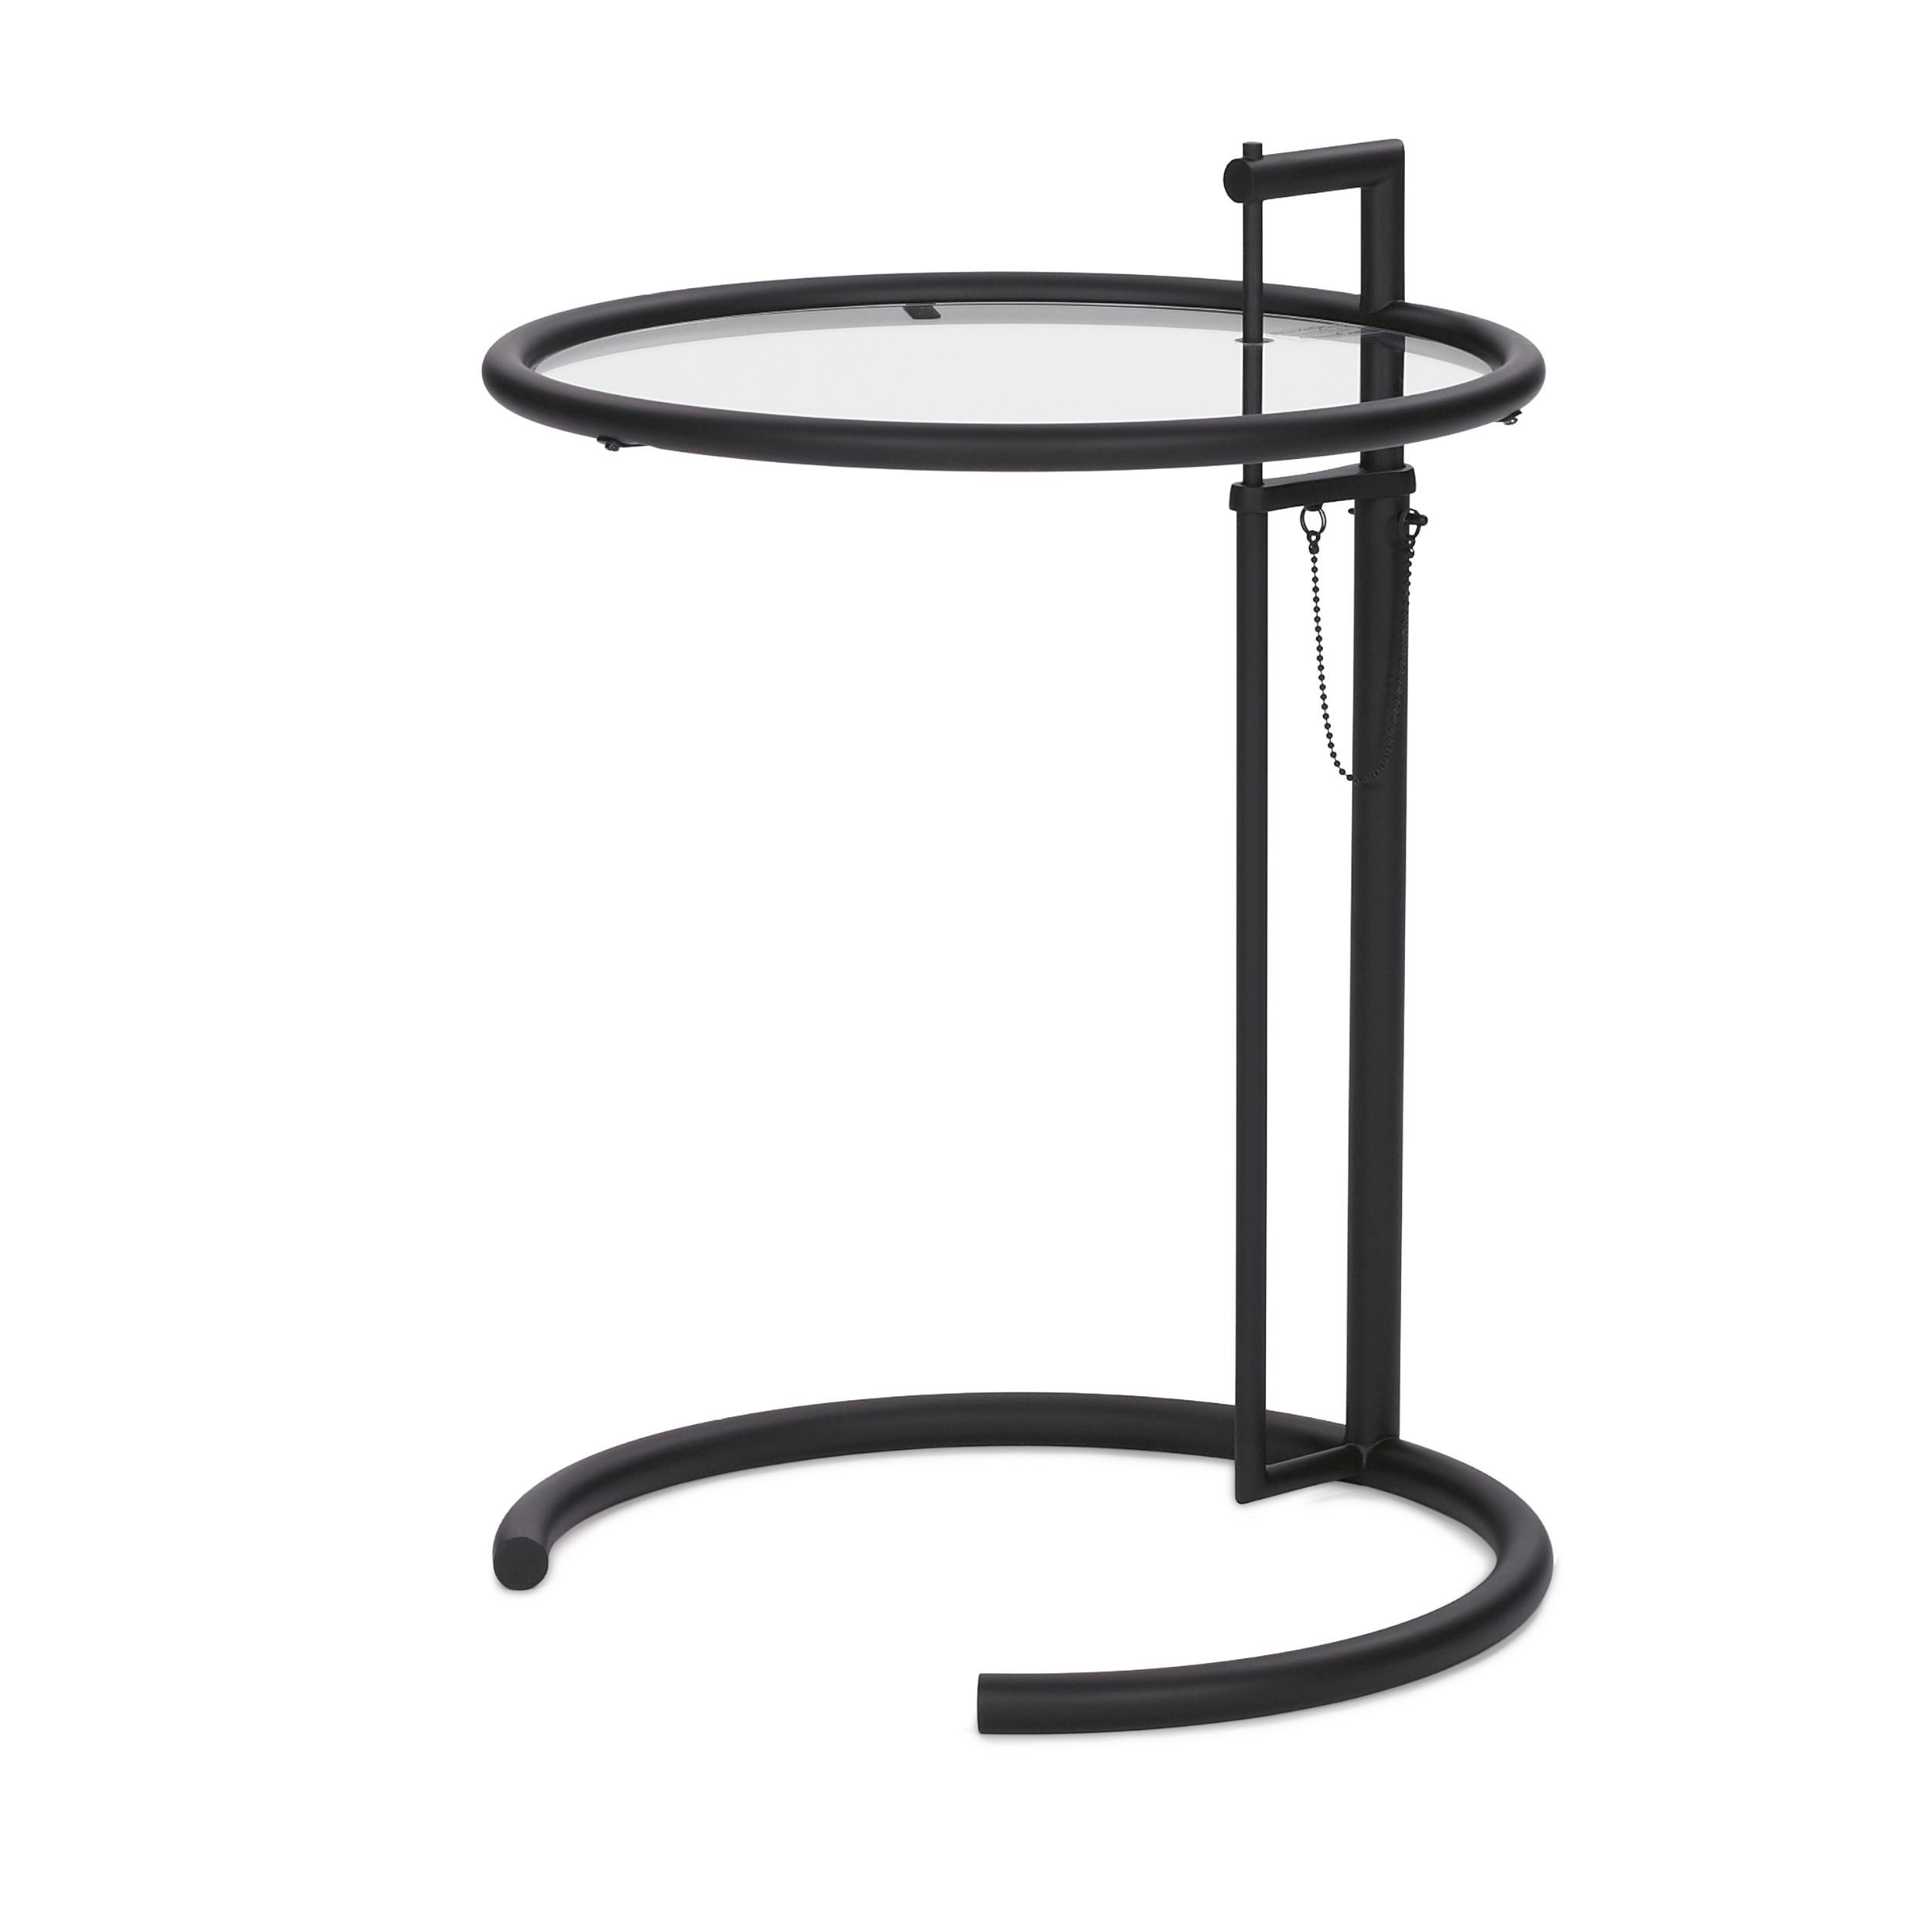 Beistelltisch Adjustable table Classicon schwarz